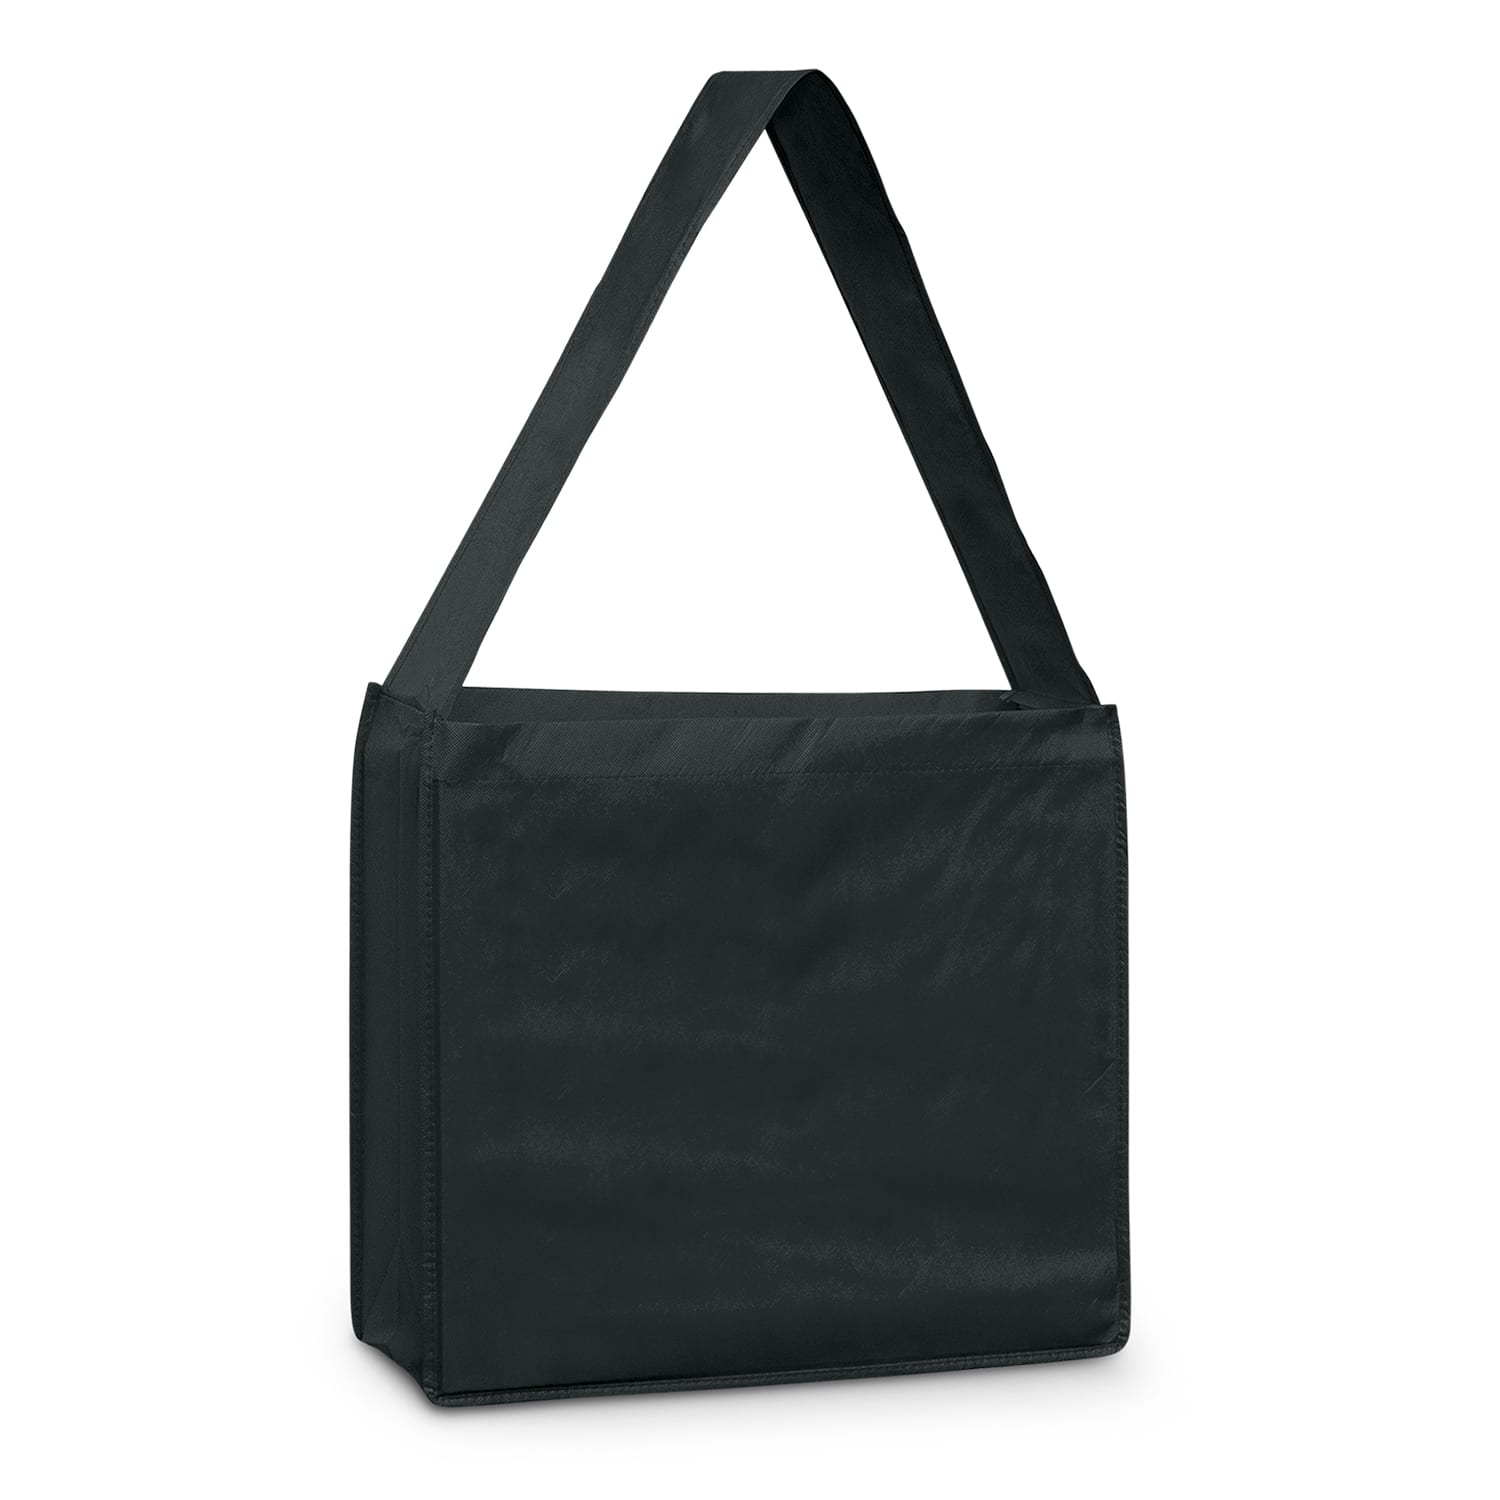 Conference Bags Slinger Tote Bag bag